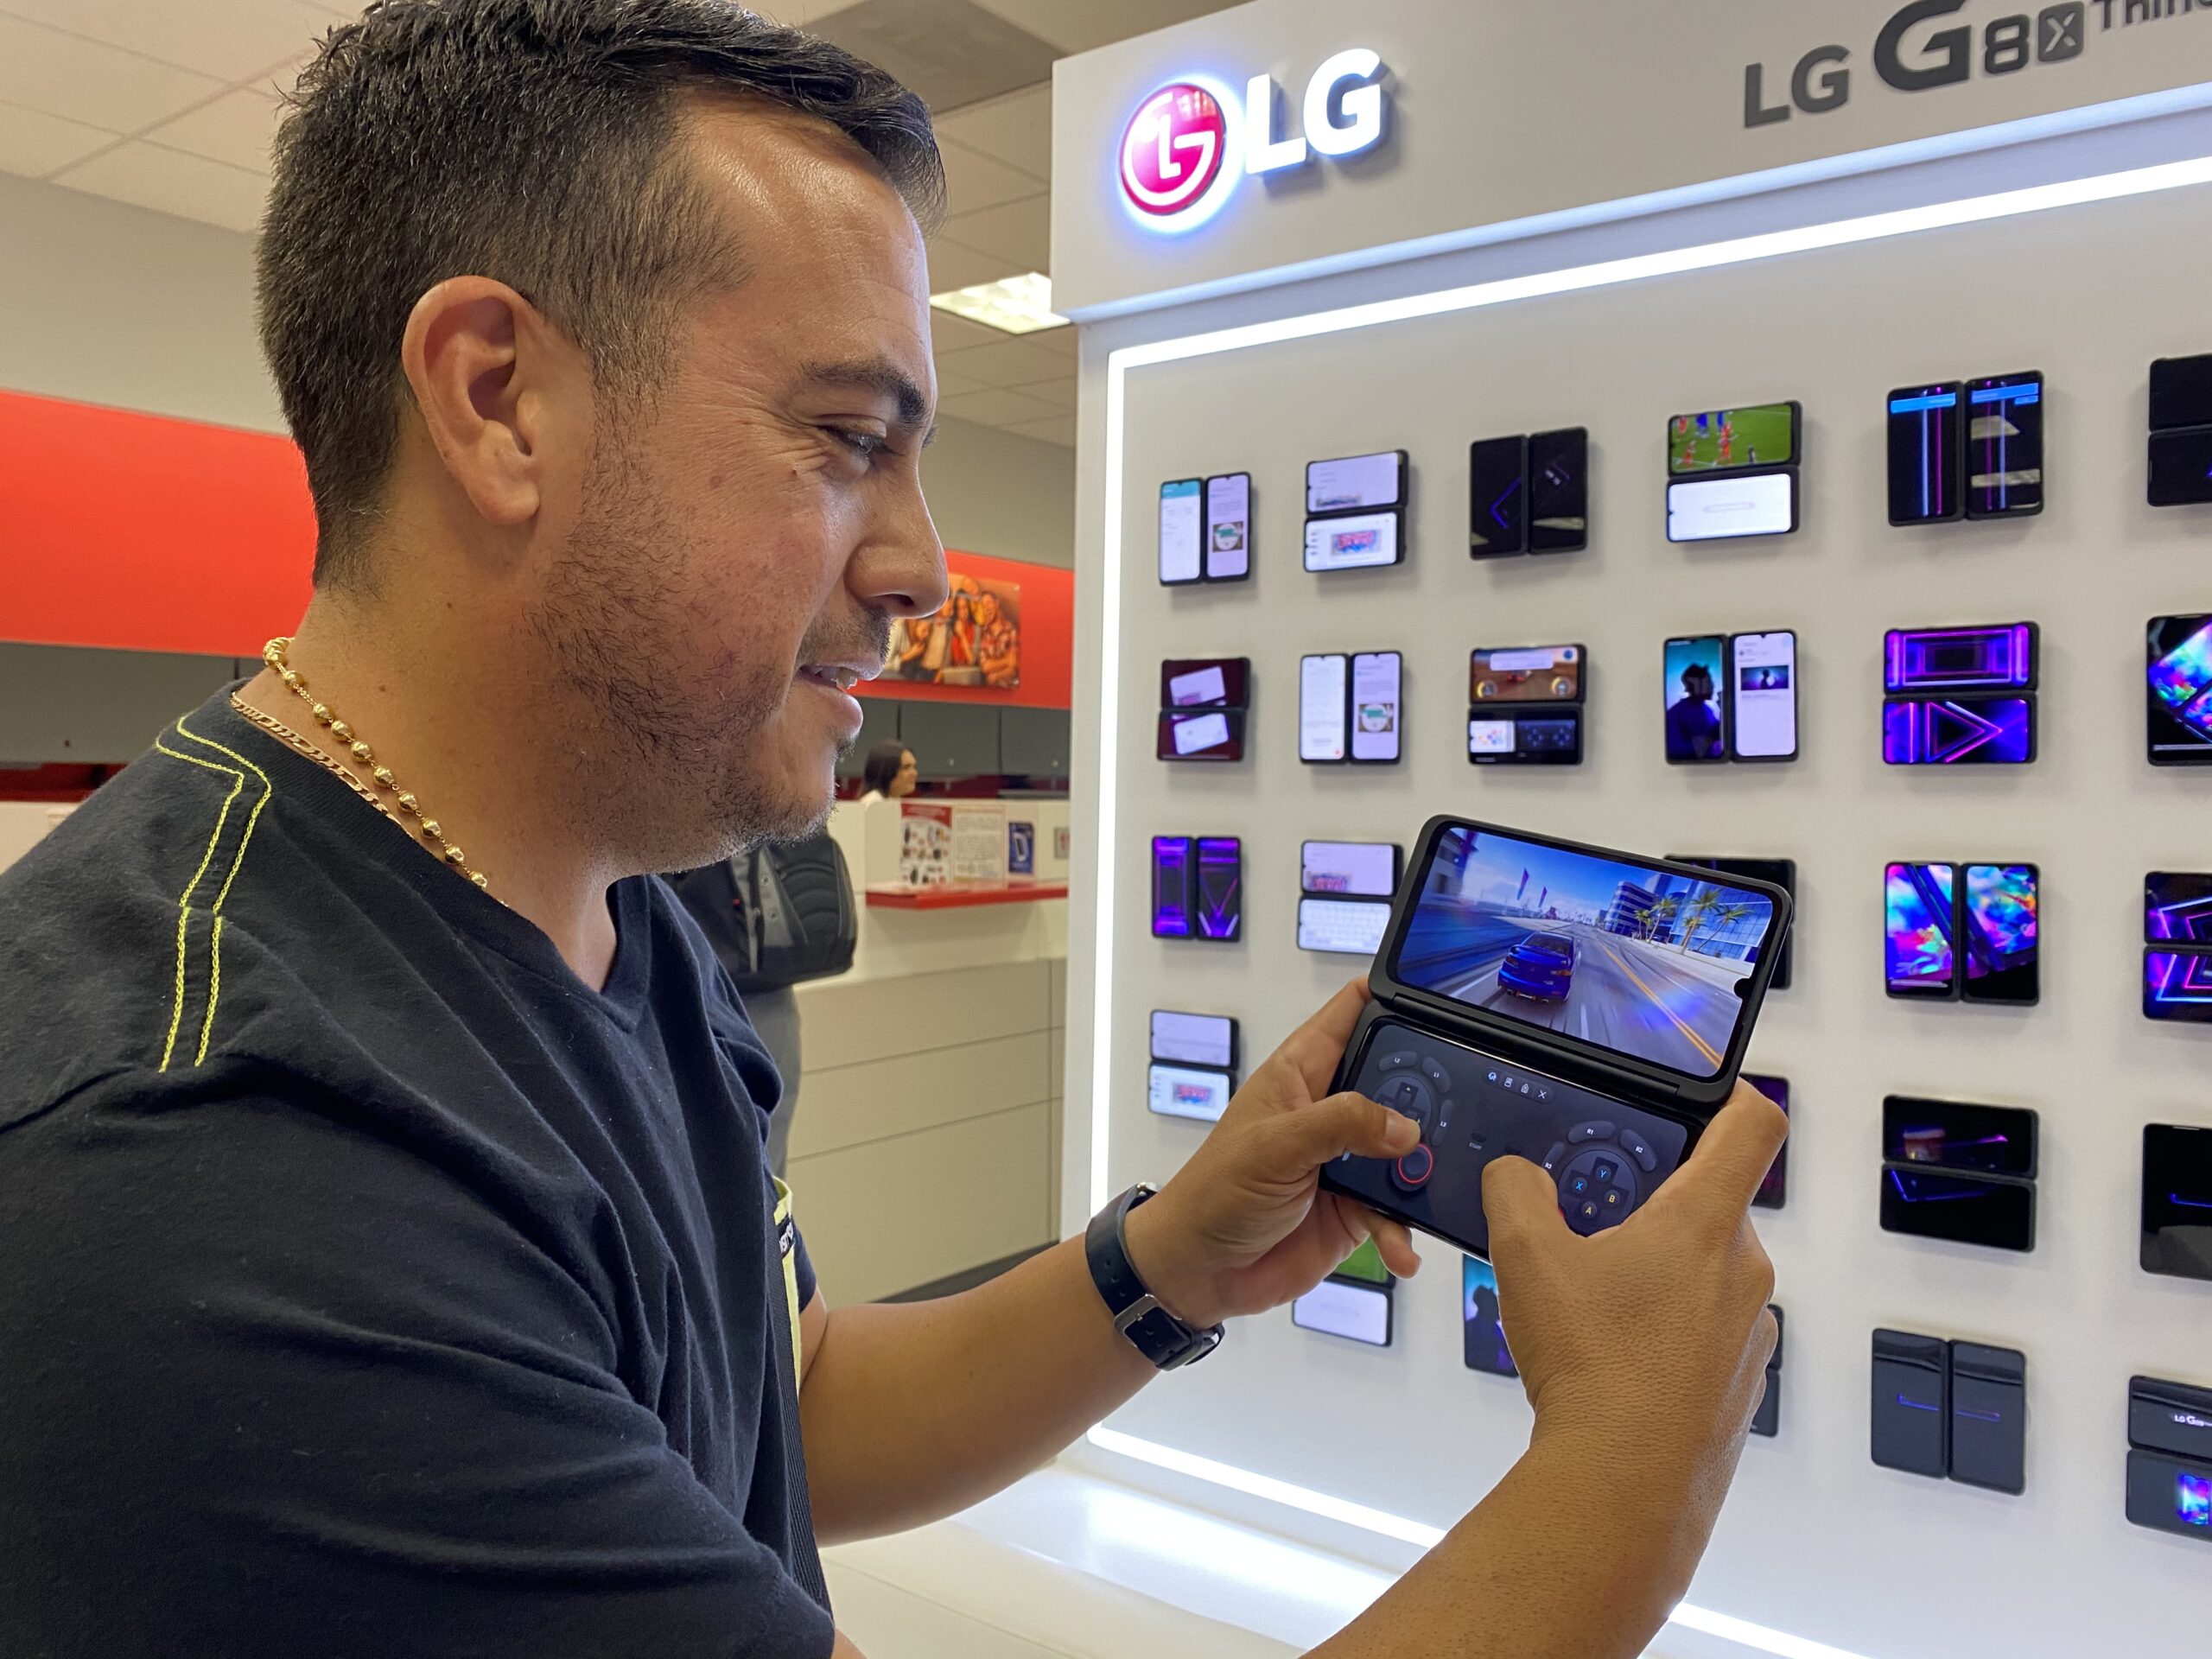 LG presenta el LG G8x Dualscreen